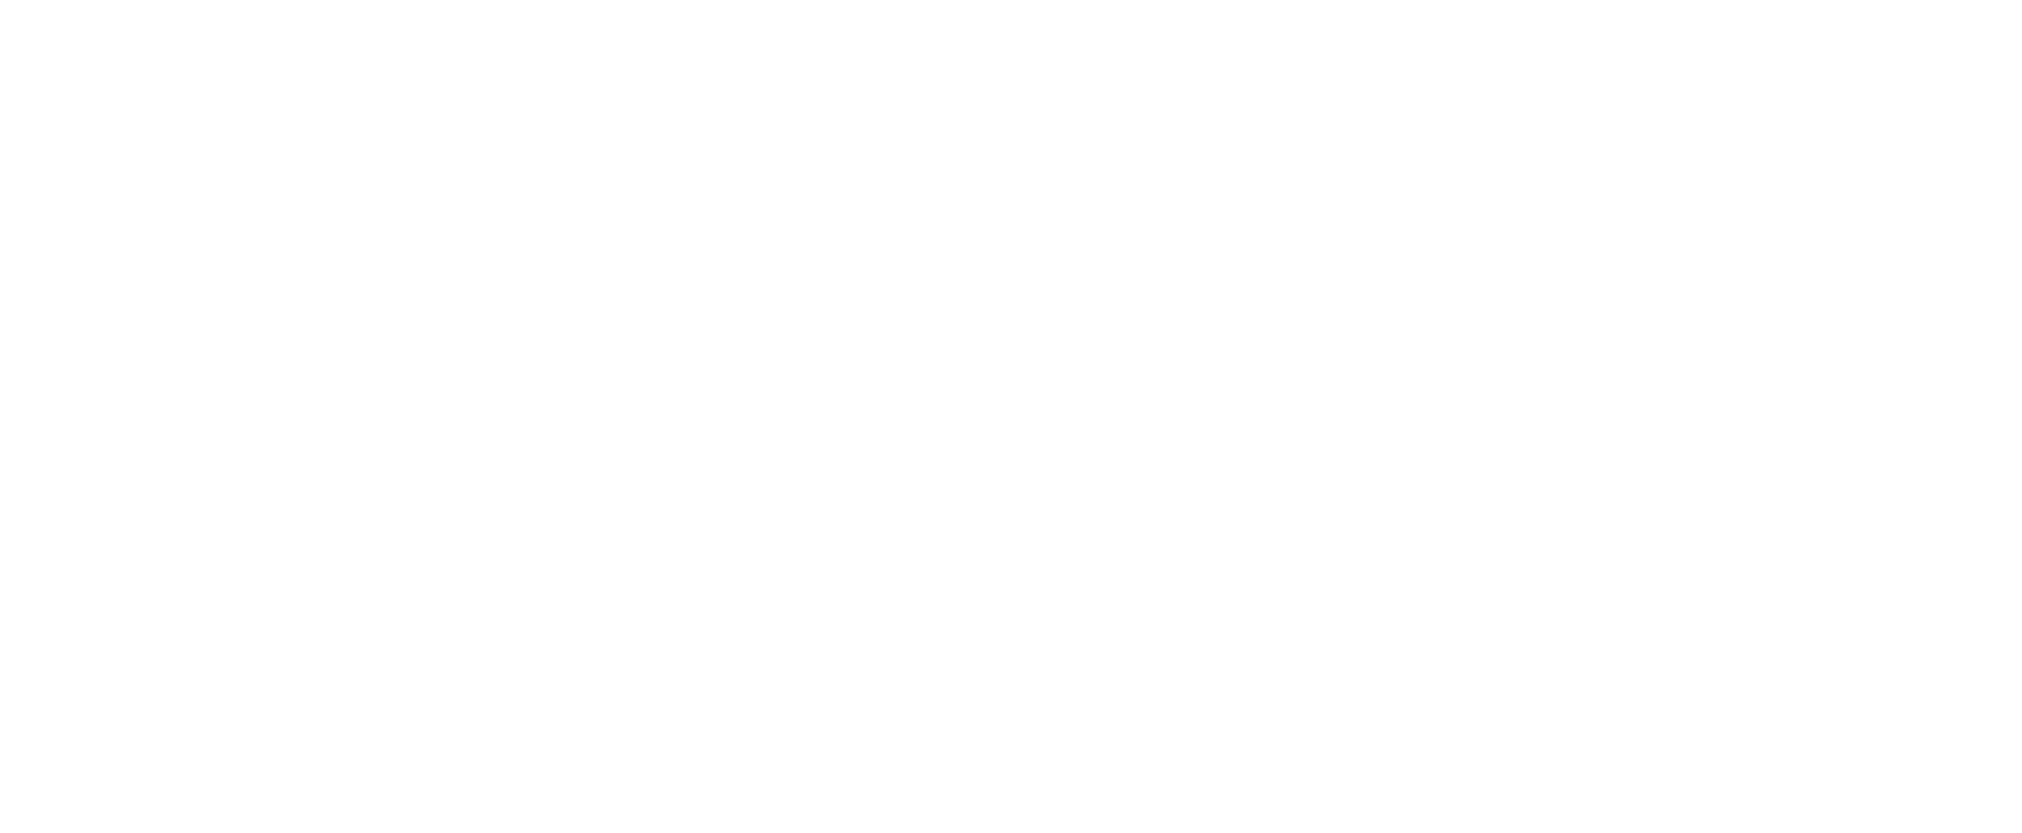 Faculdade Batista Brasileira